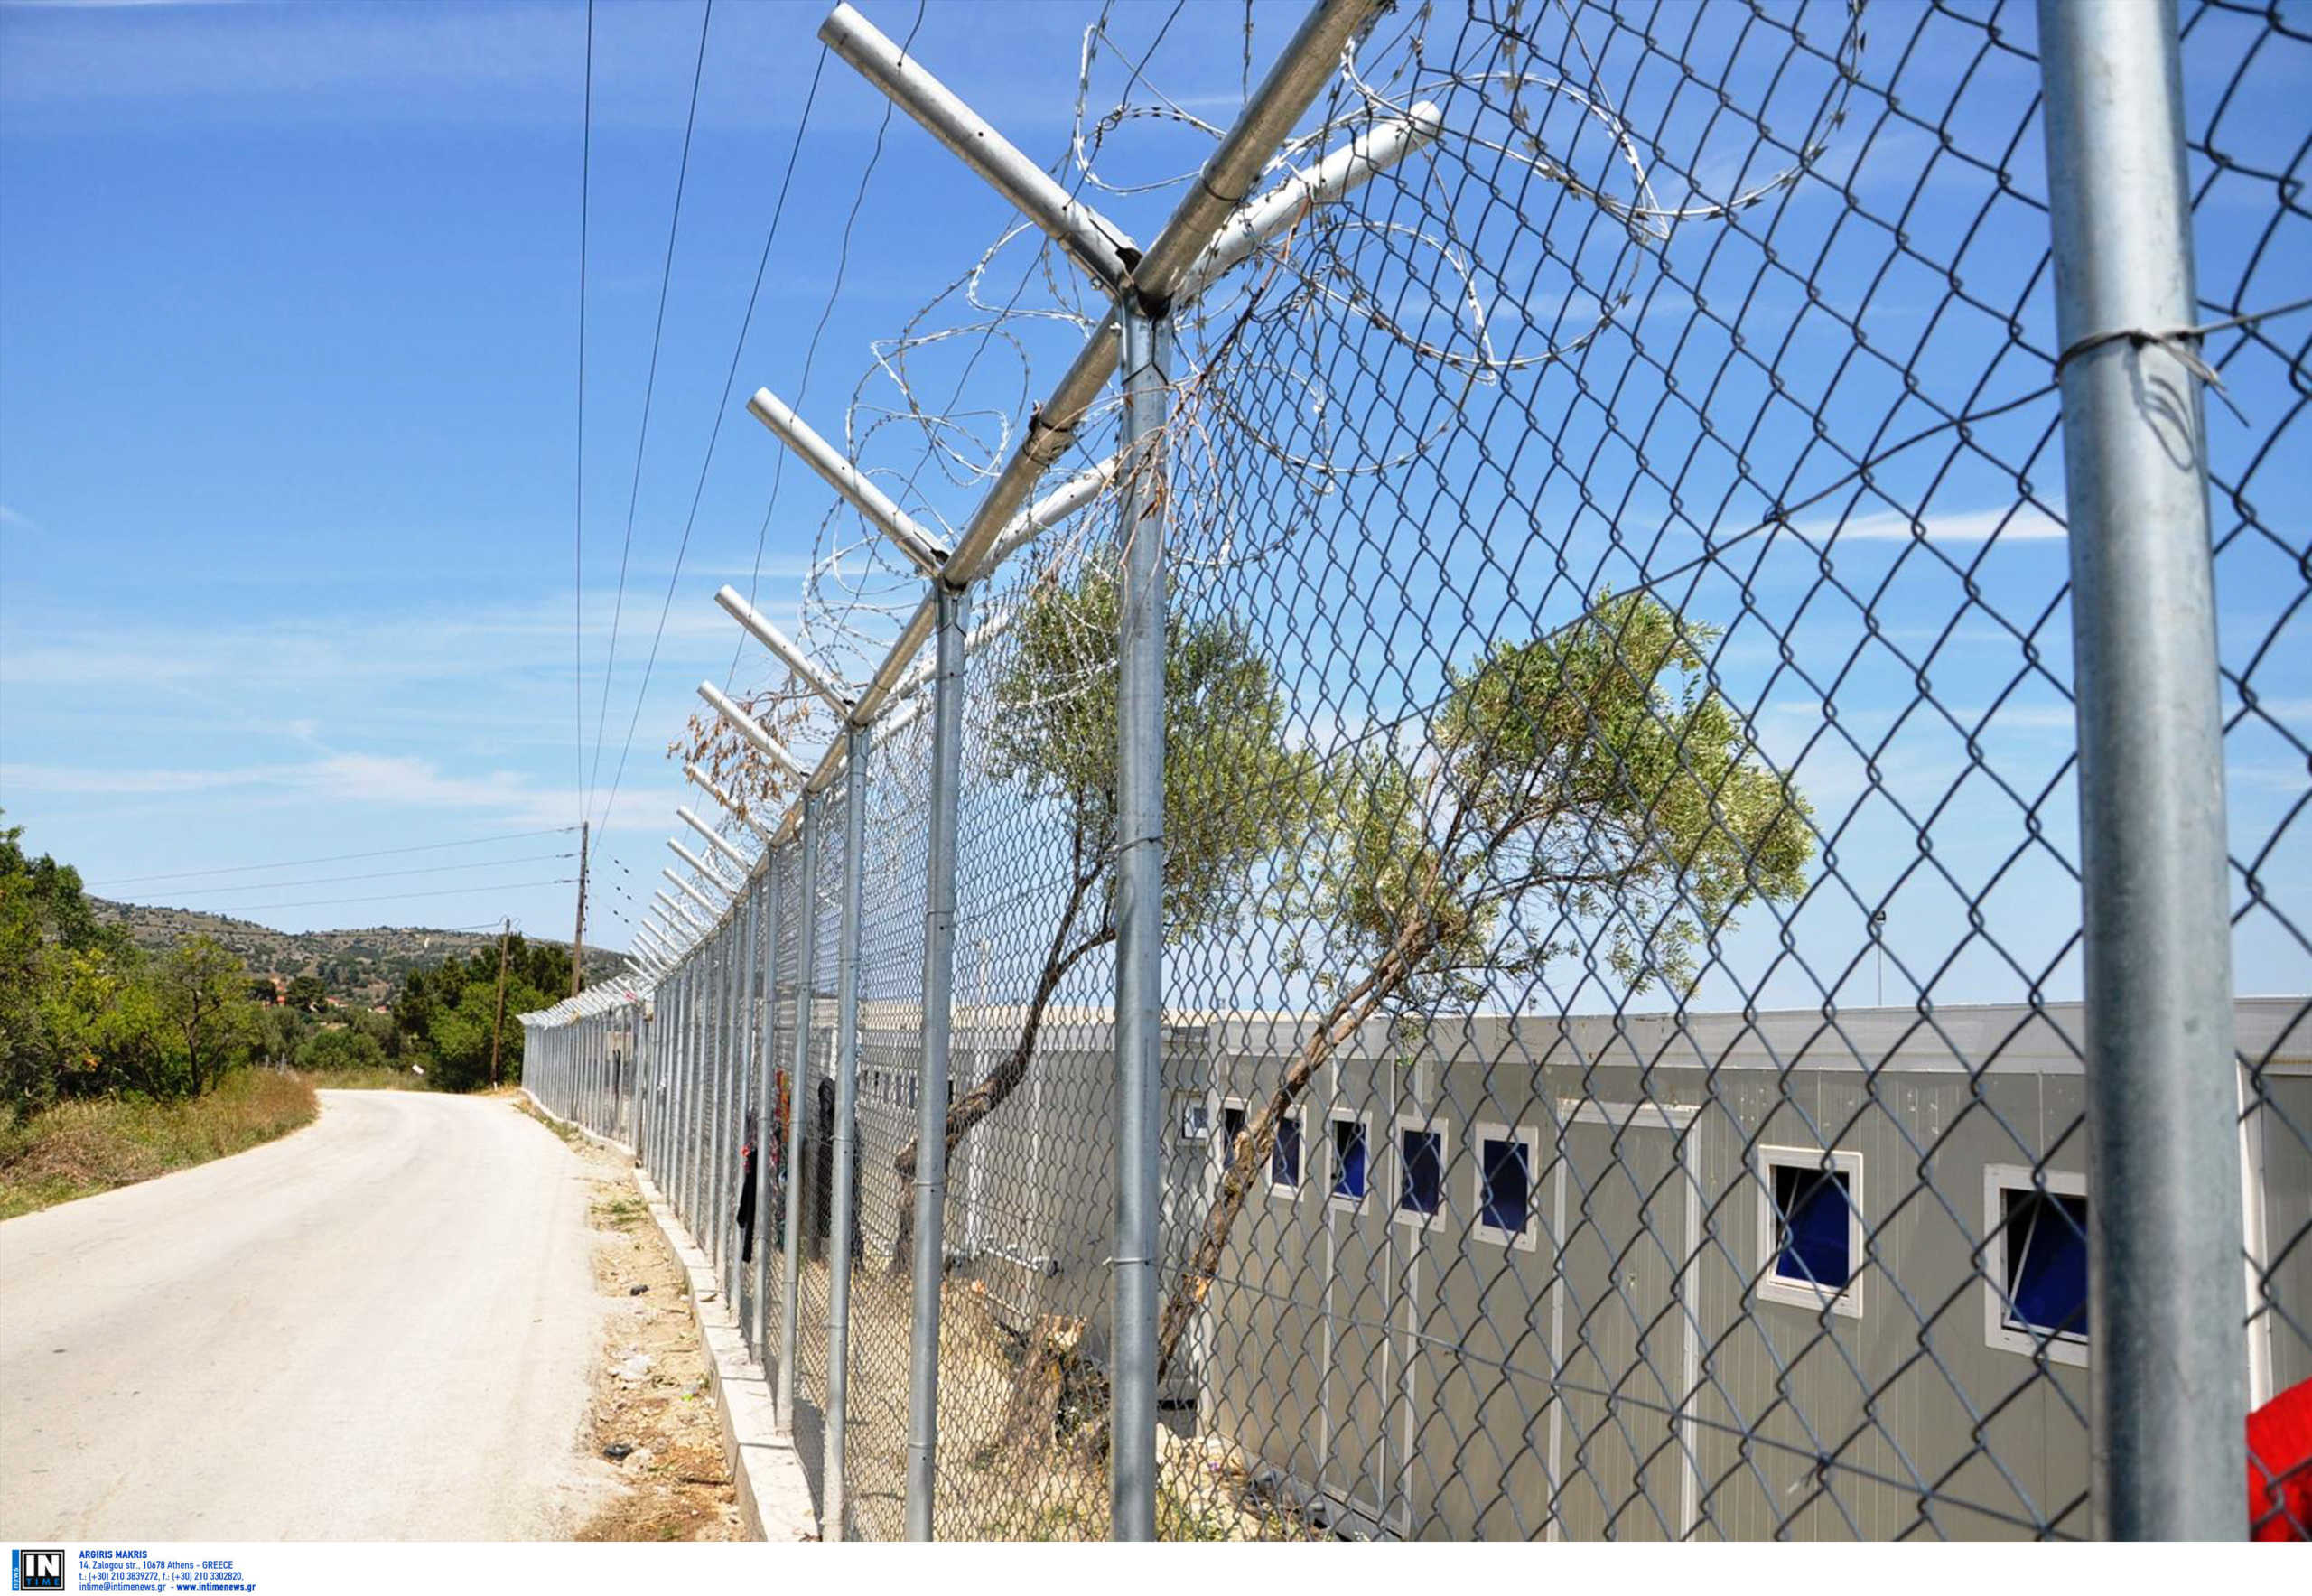 Χίος: Αλαλούμ με τη δομή για καραντίνα προσφύγων και μεταναστών λόγω κορονοϊού!